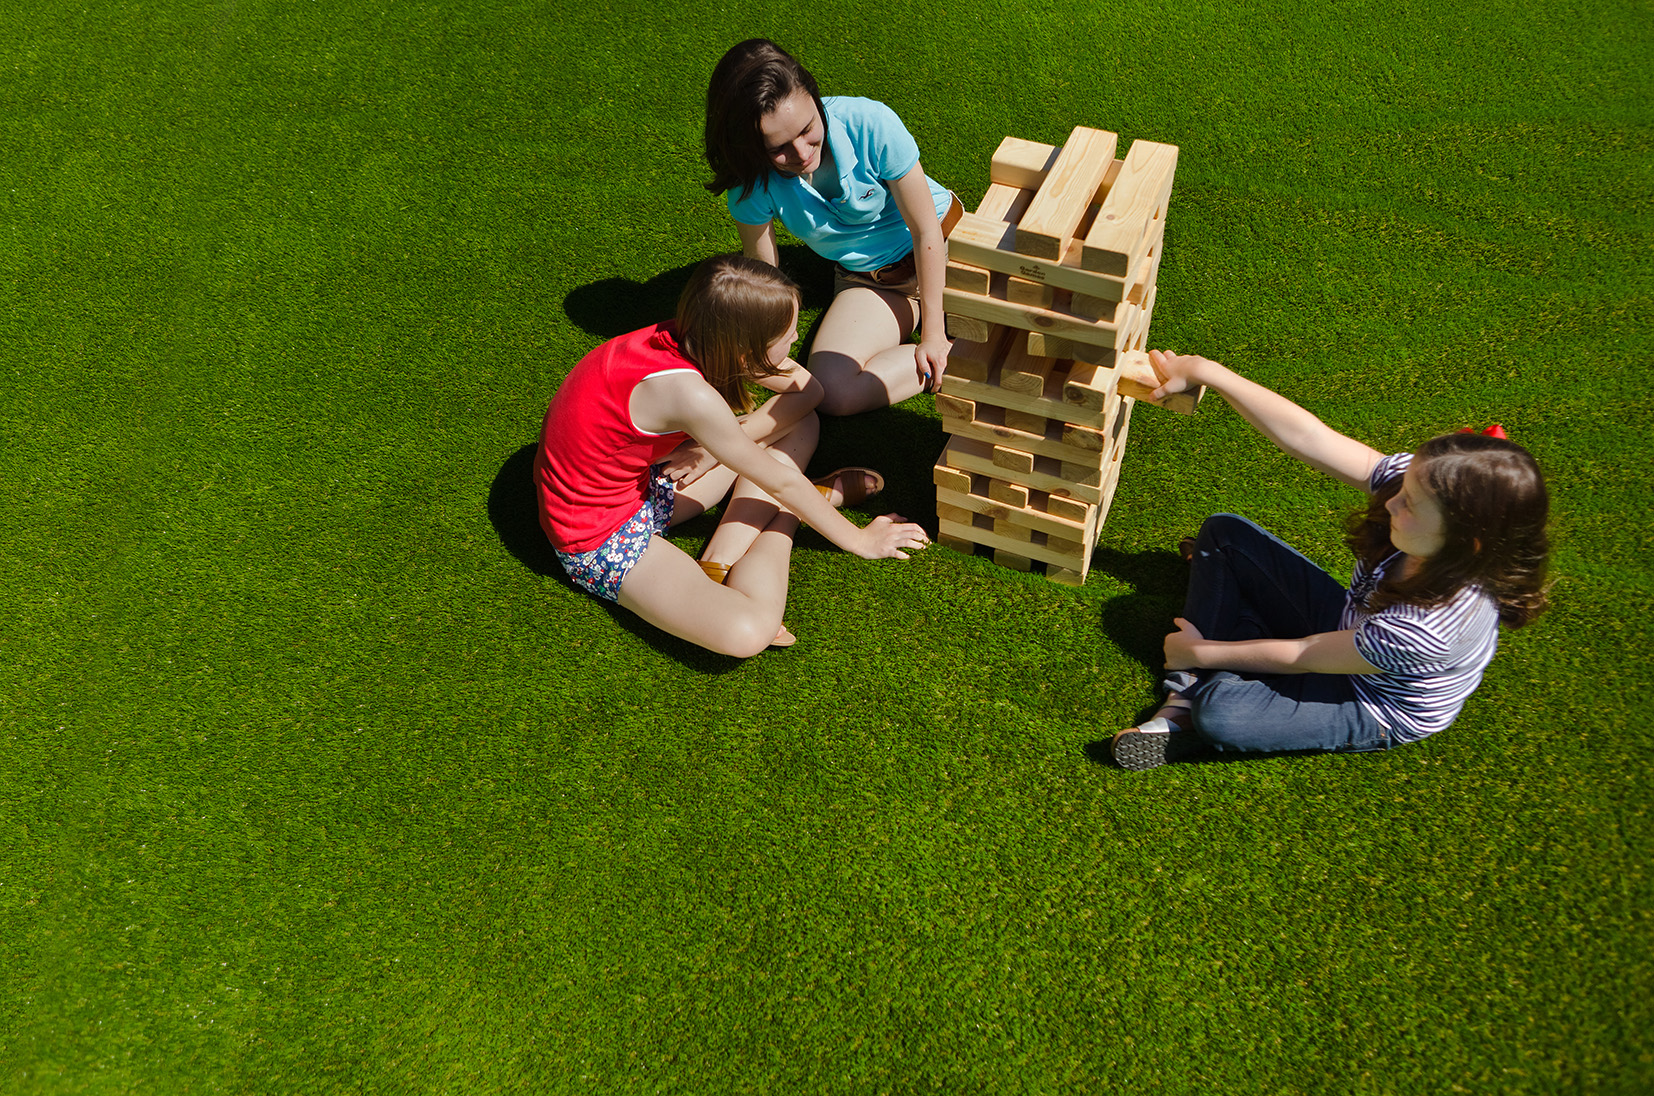 Garden games played on artificial grass